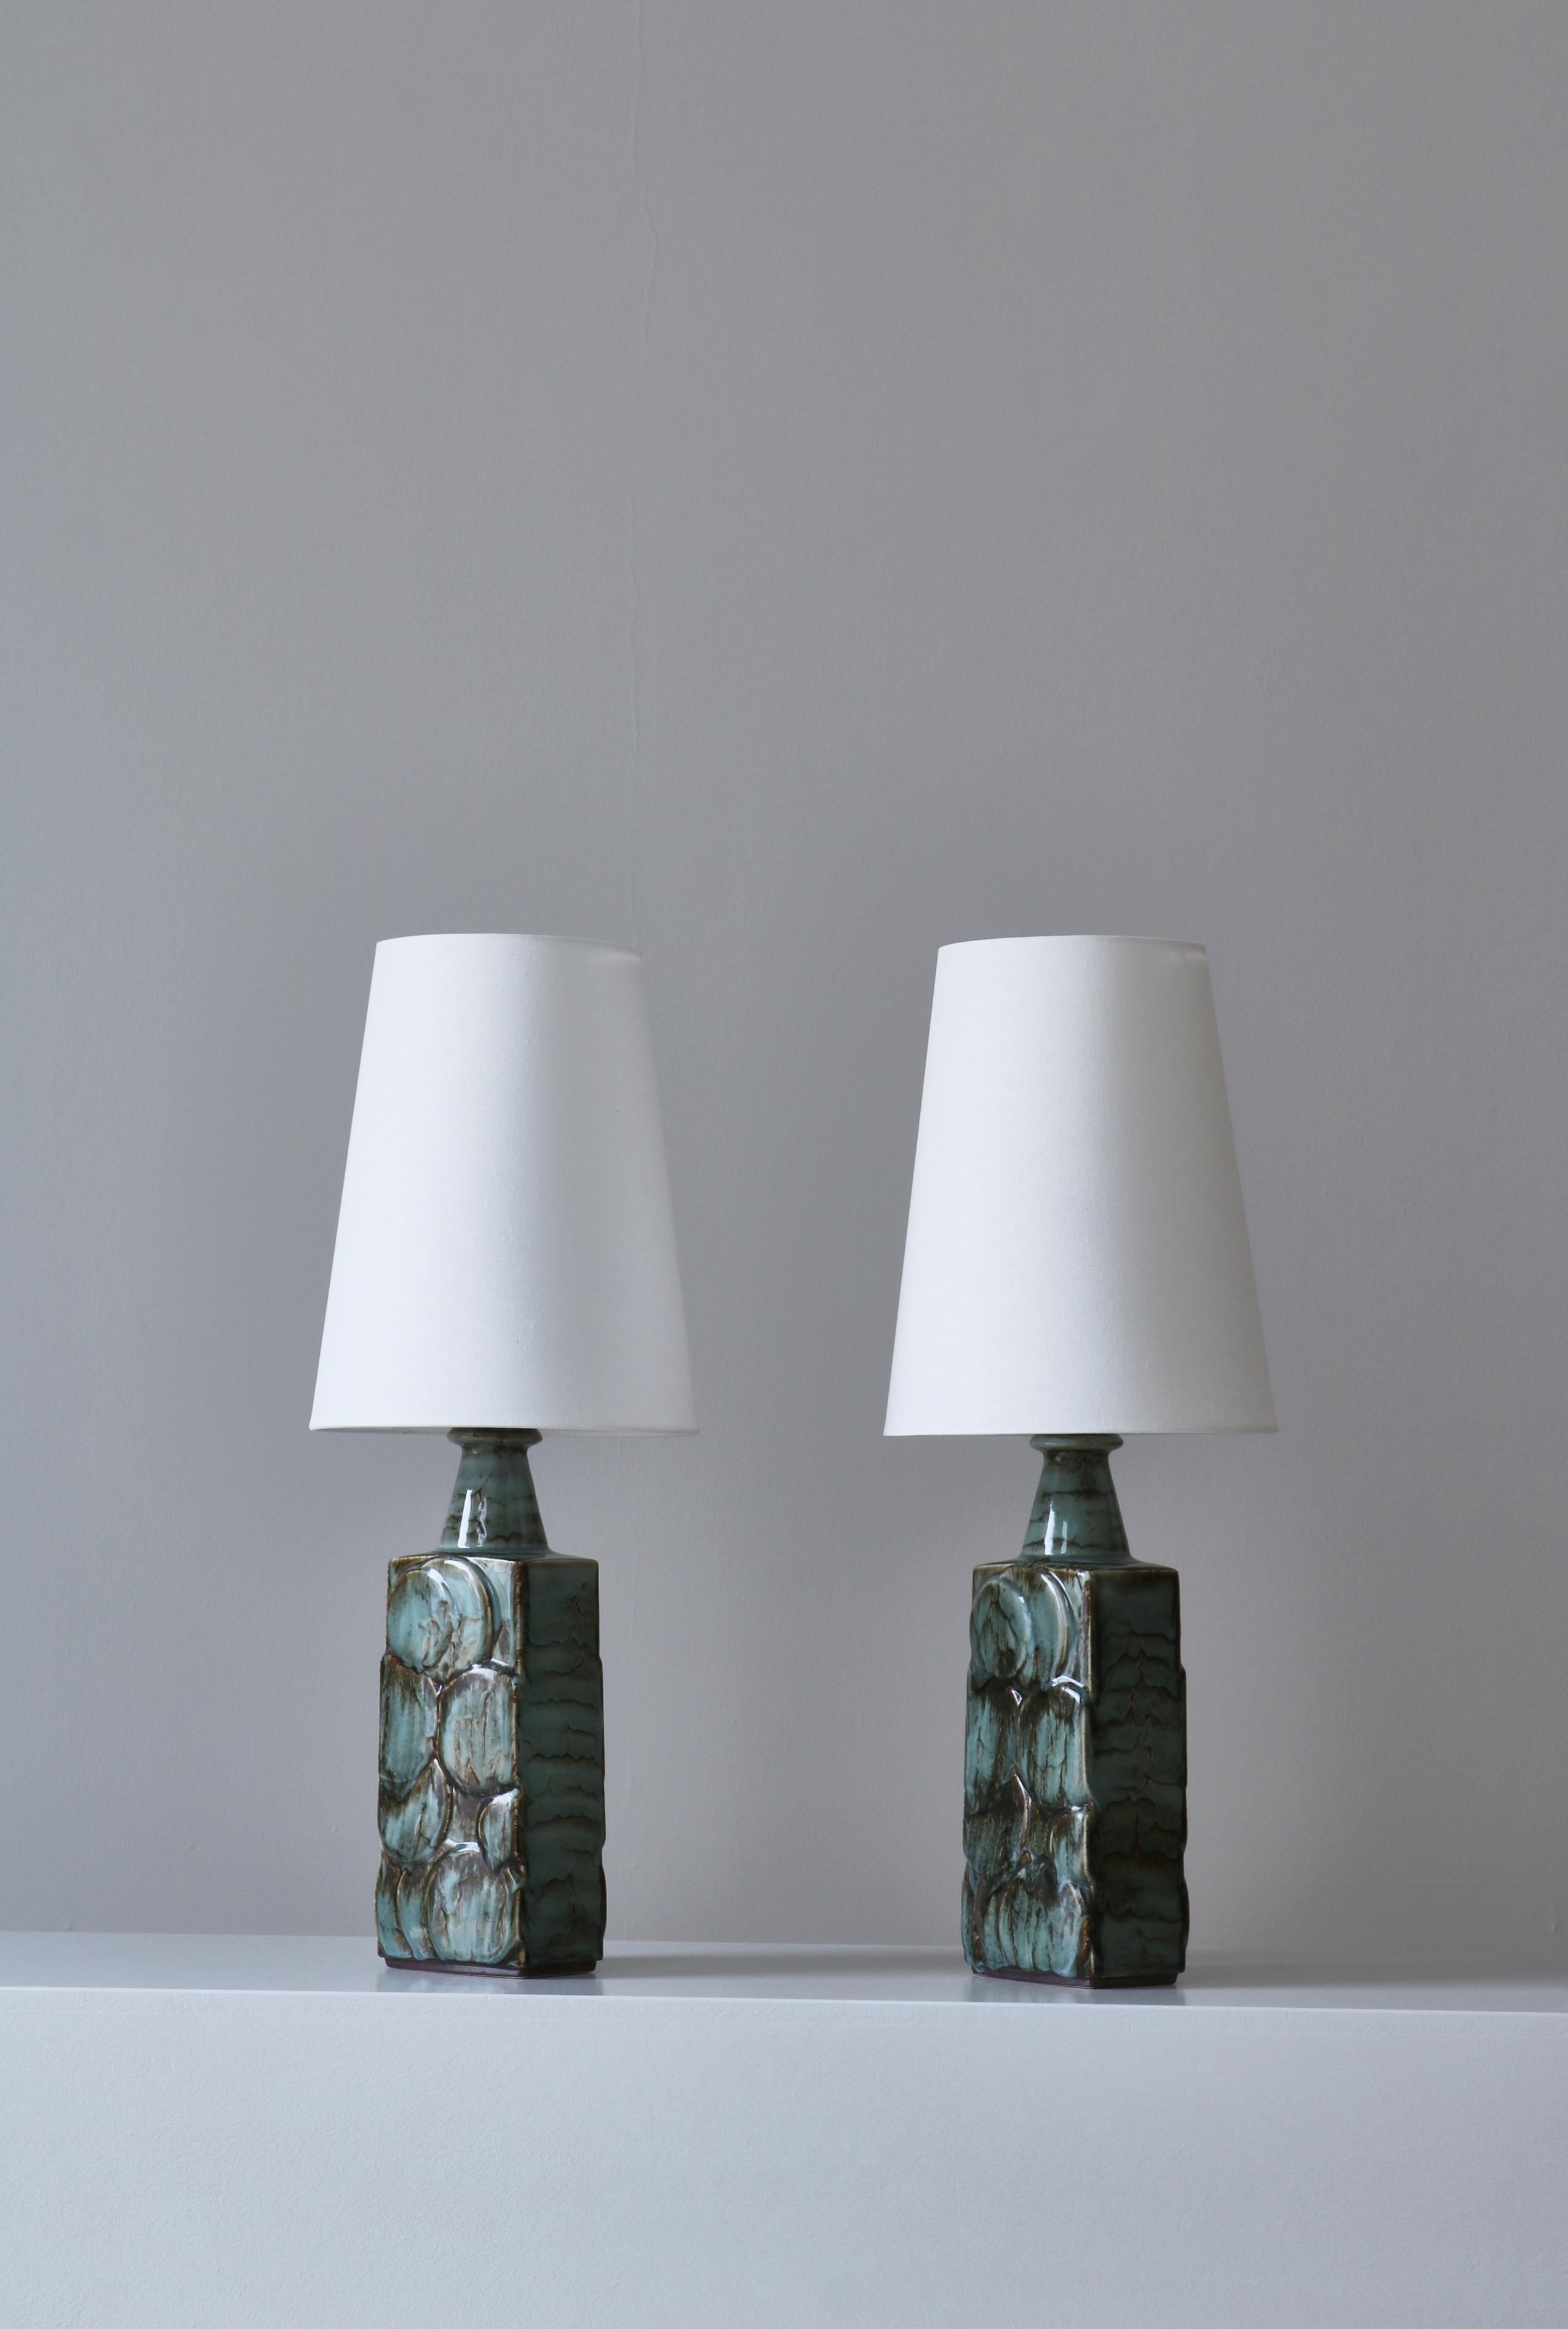 Ein wunderschönes Paar skandinavisch-moderner Tischlampen, die in den 1960er Jahren in der Steinzeugwerkstatt Désirée in Kopenhagen hergestellt wurden. Die Lampensockel sind handgefertigt in Reliefdekor mit einer ausdrucksstarken Glasur. Beide